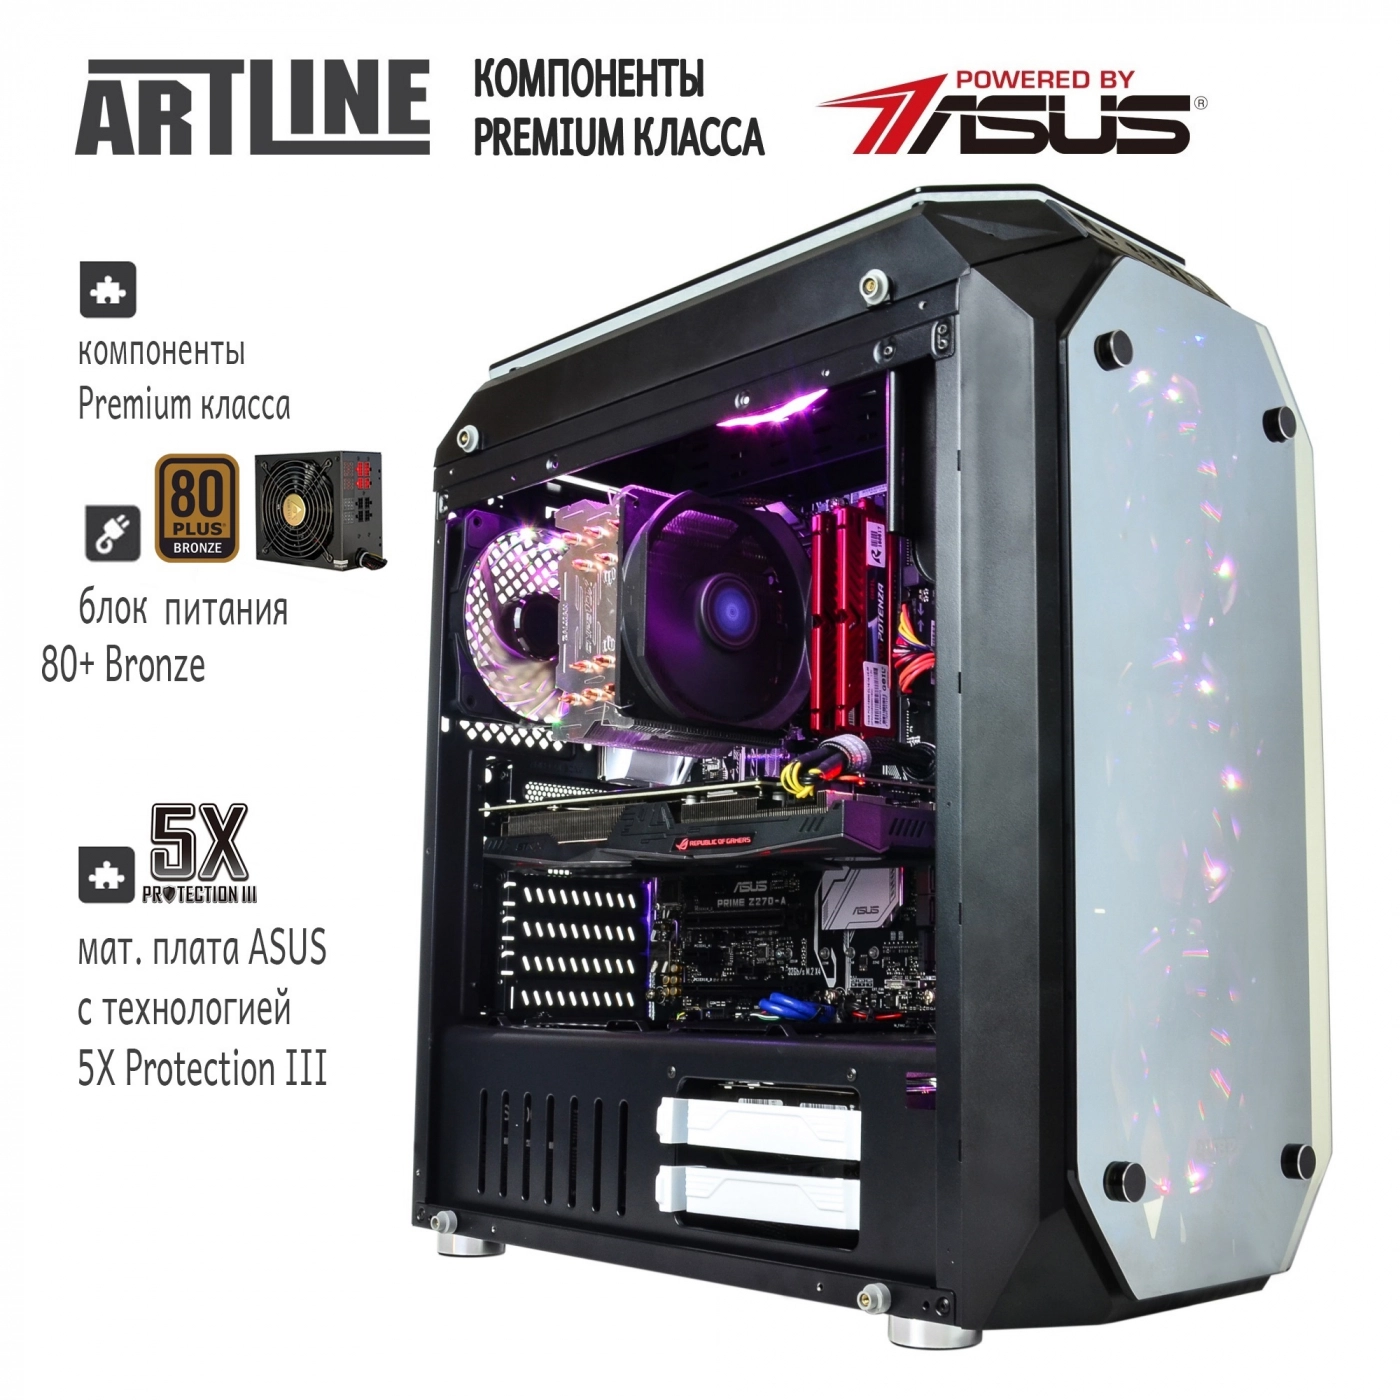 Купить Компьютер ARTLINE Gaming X92v05 - фото 4